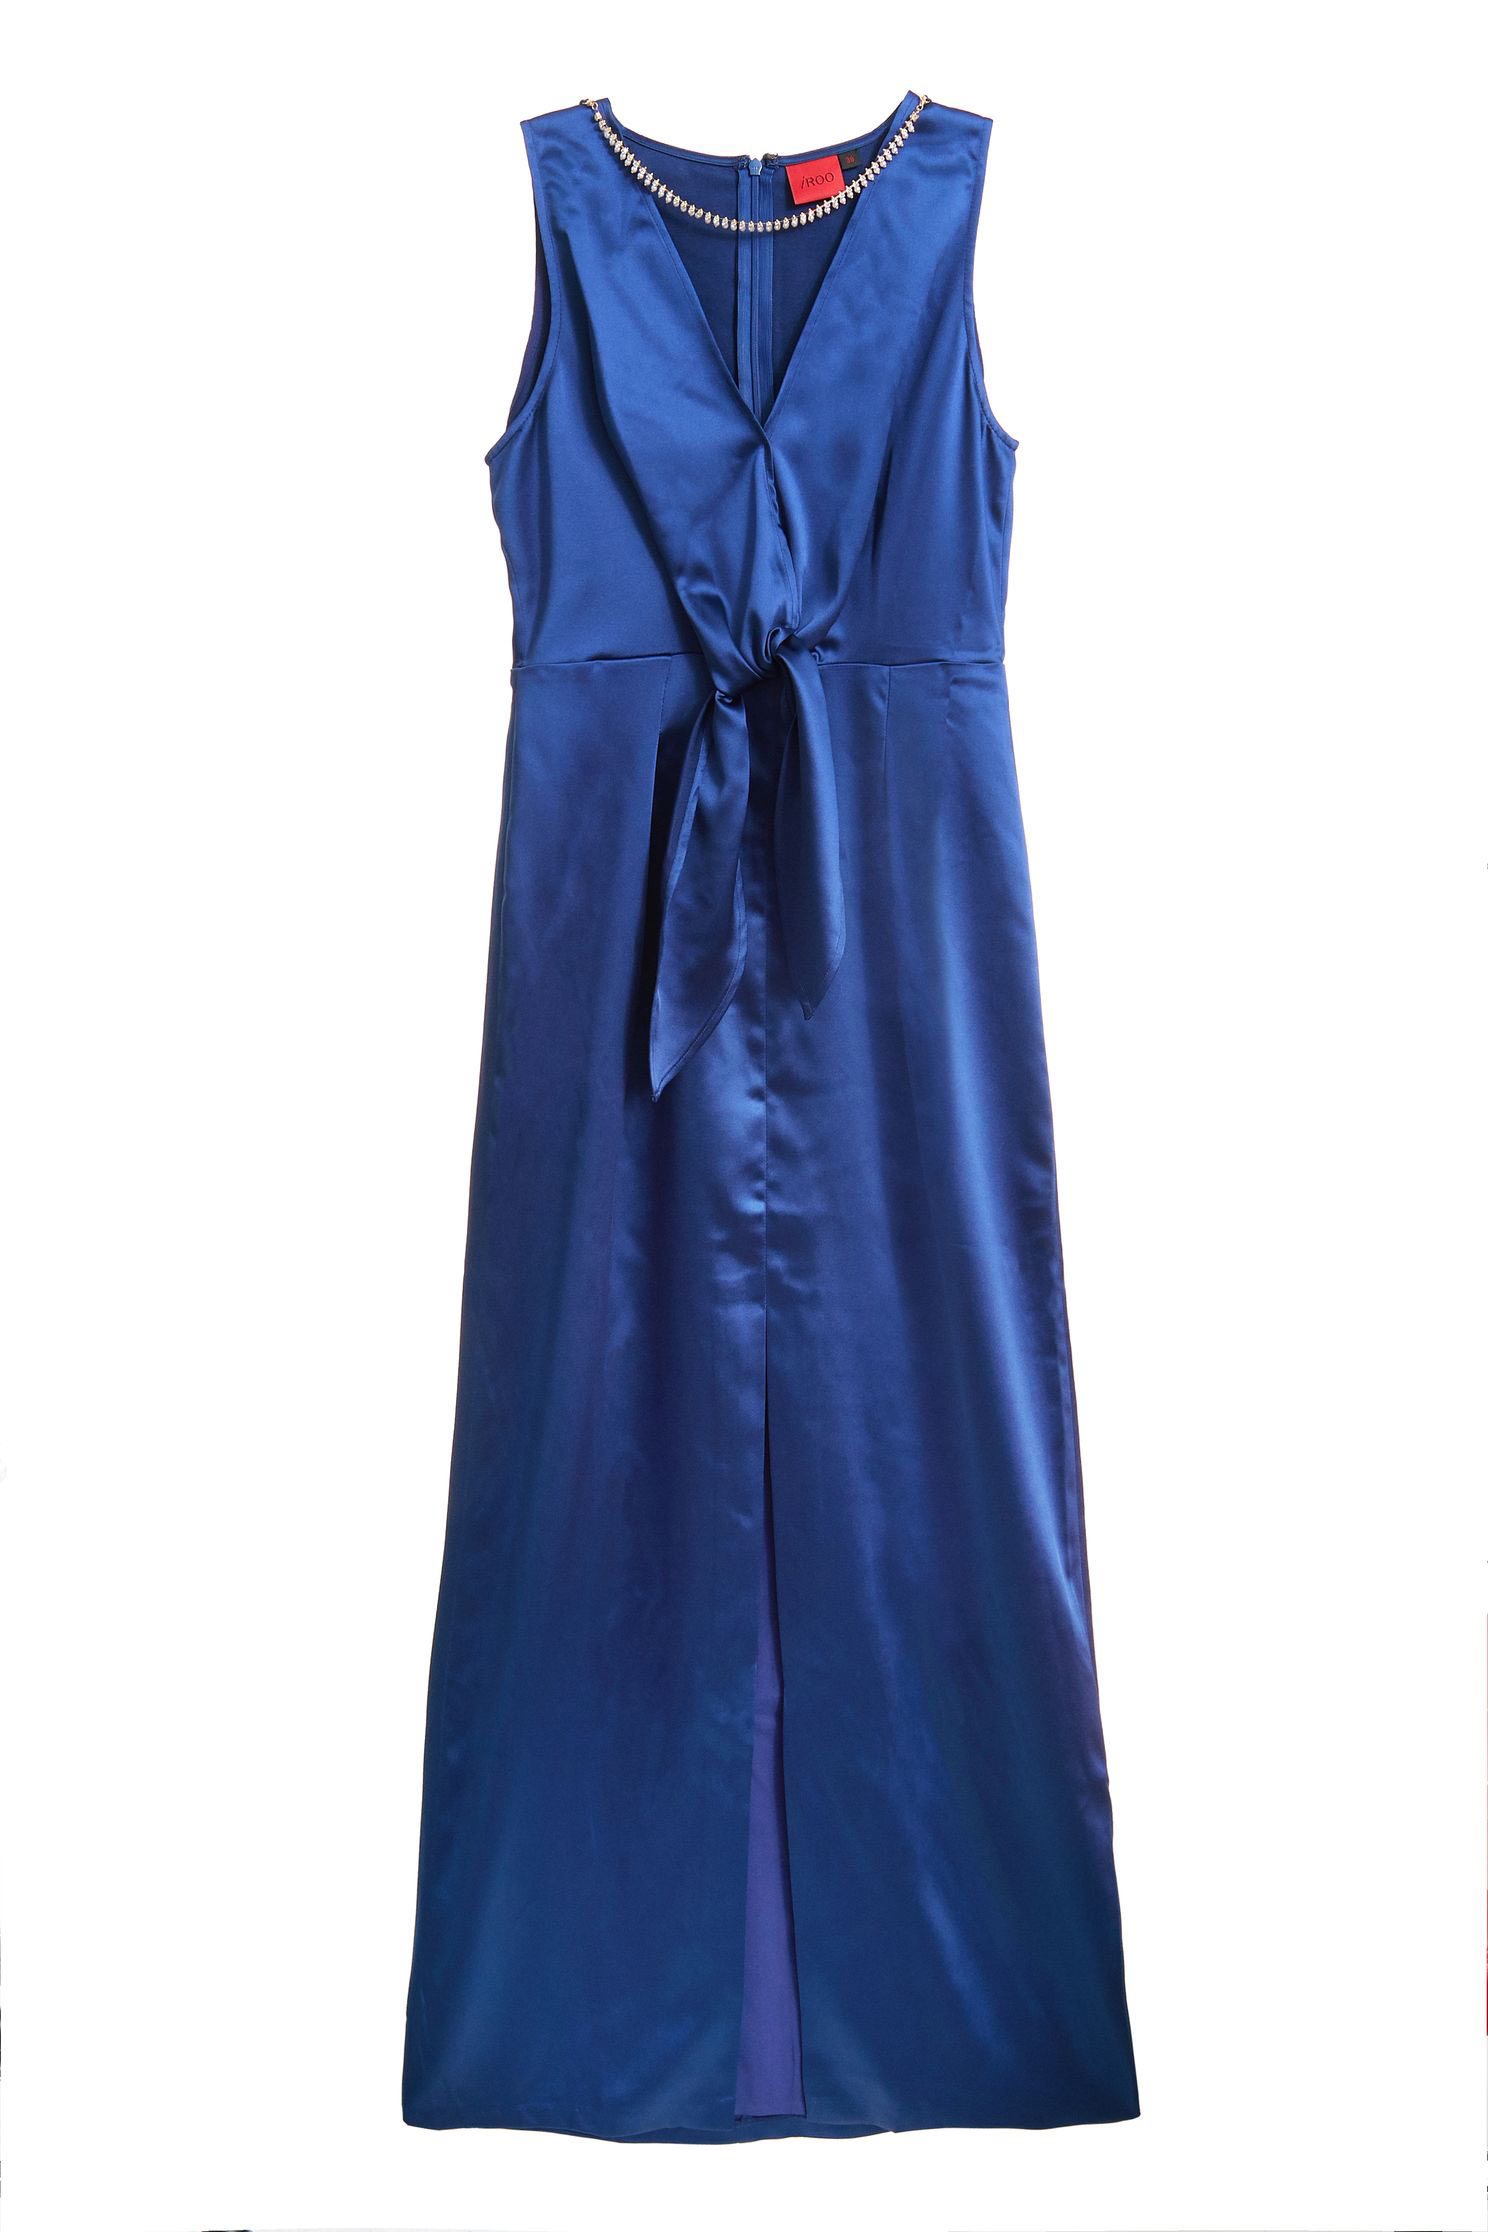 綁結金鍊條藍色長禮服綁結金鍊條藍色長禮服,V領洋裝,一般洋裝,小禮服,無袖洋裝,禮服,秋冬穿搭,連身洋裝